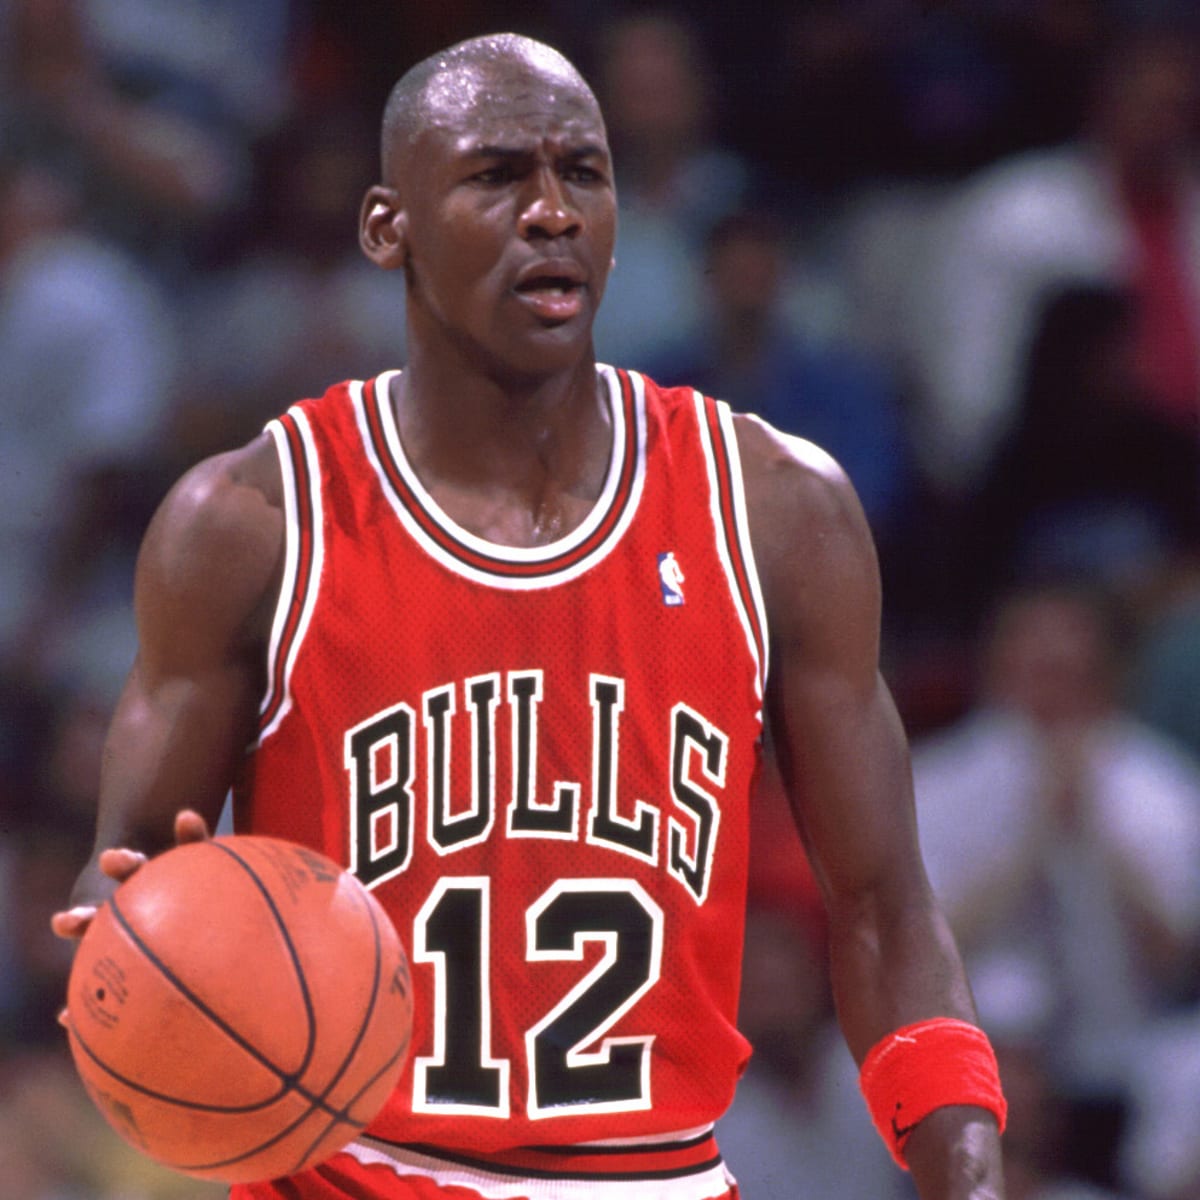 HD wallpaper: Chicago Bulls jersey, NBA, basketball, sports, Michael Jordan